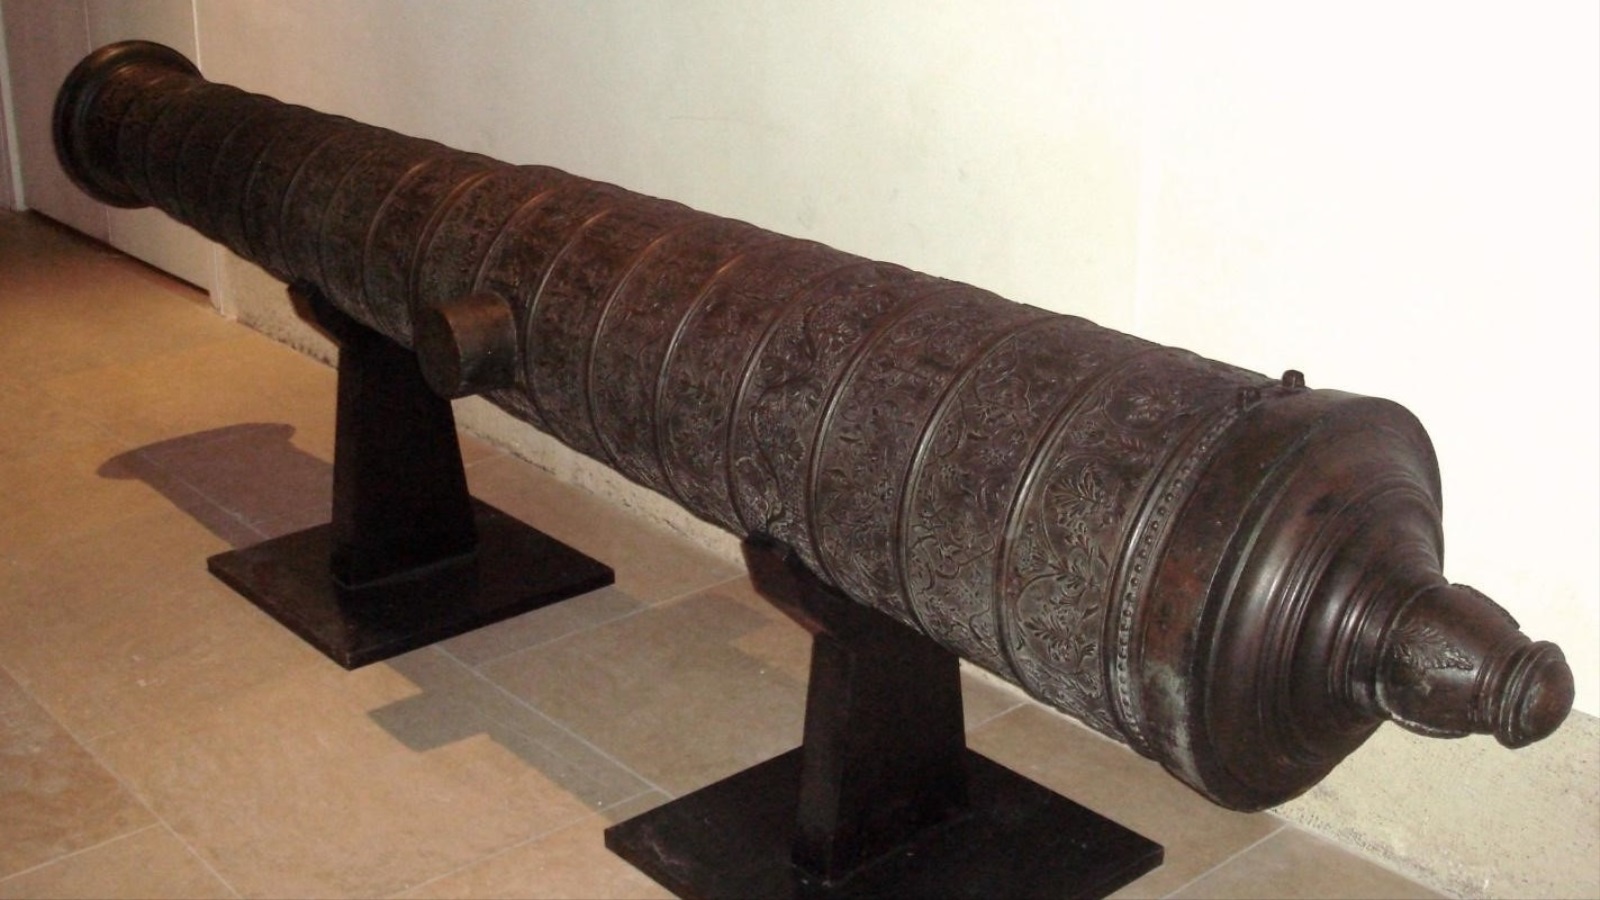 مدفع عثماني - القرن السادس عشر الميلادي (مواقع التواصل)